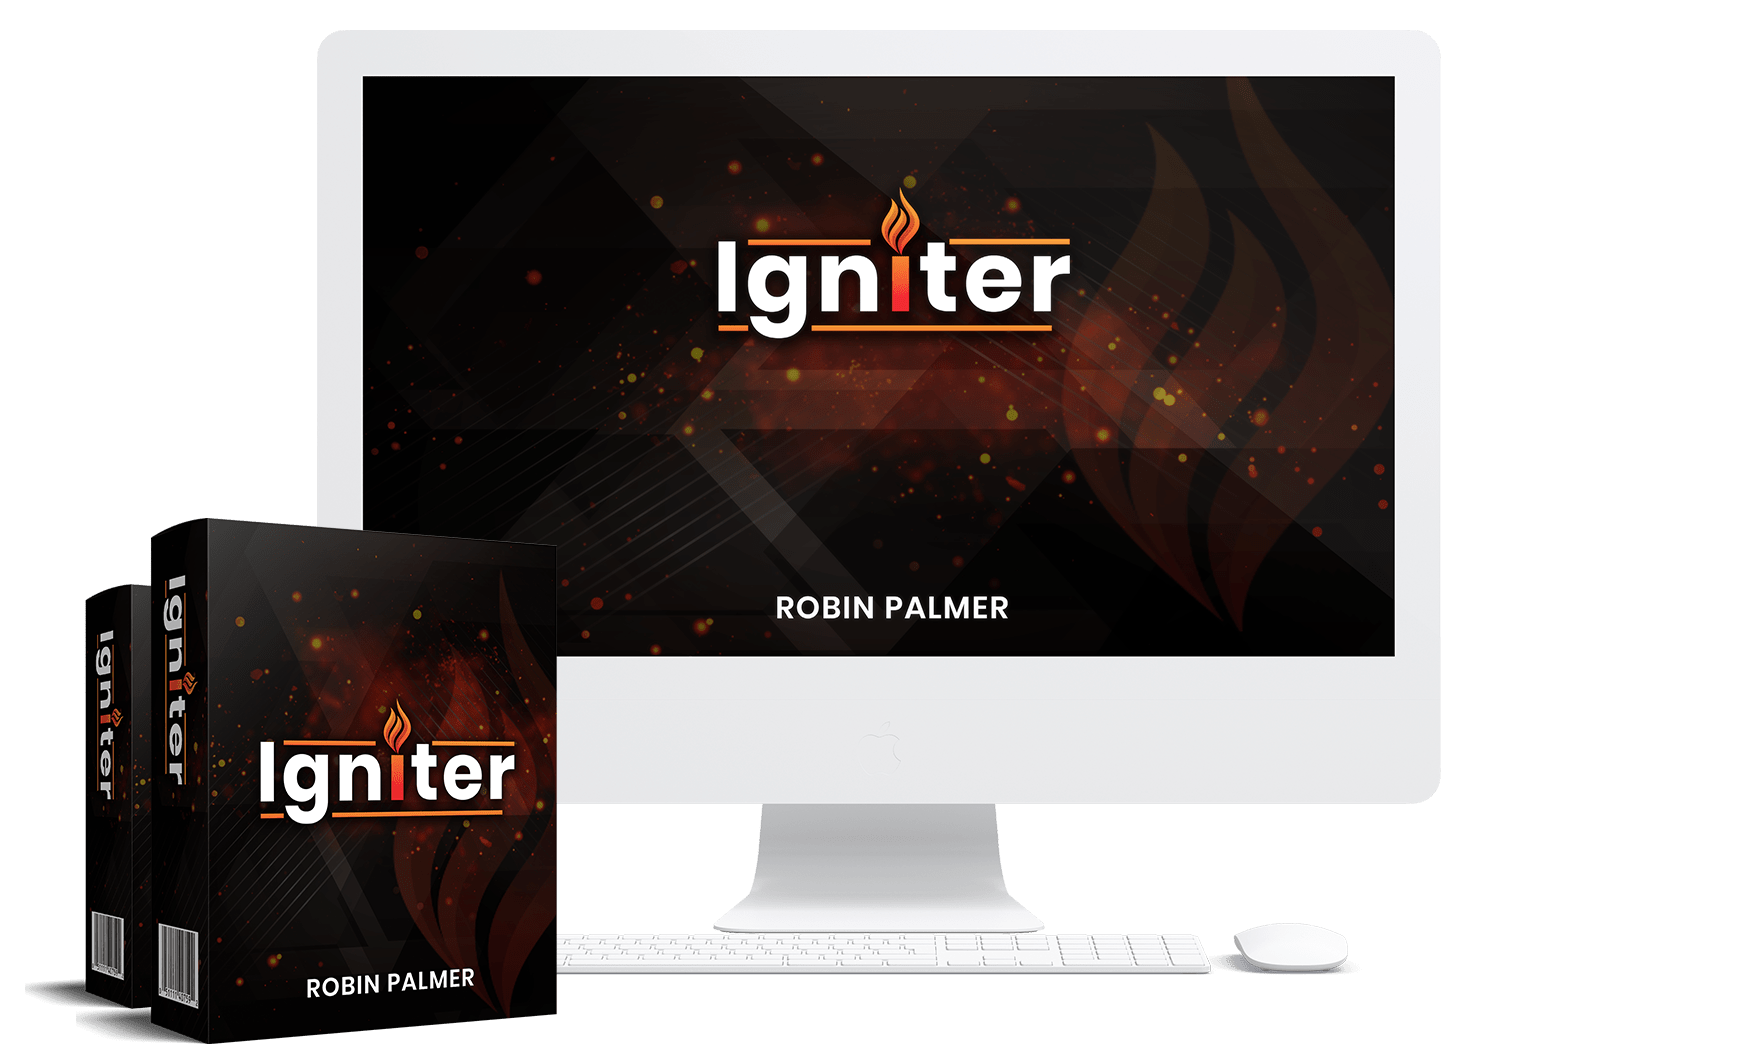 [GET] Igniter Free Download